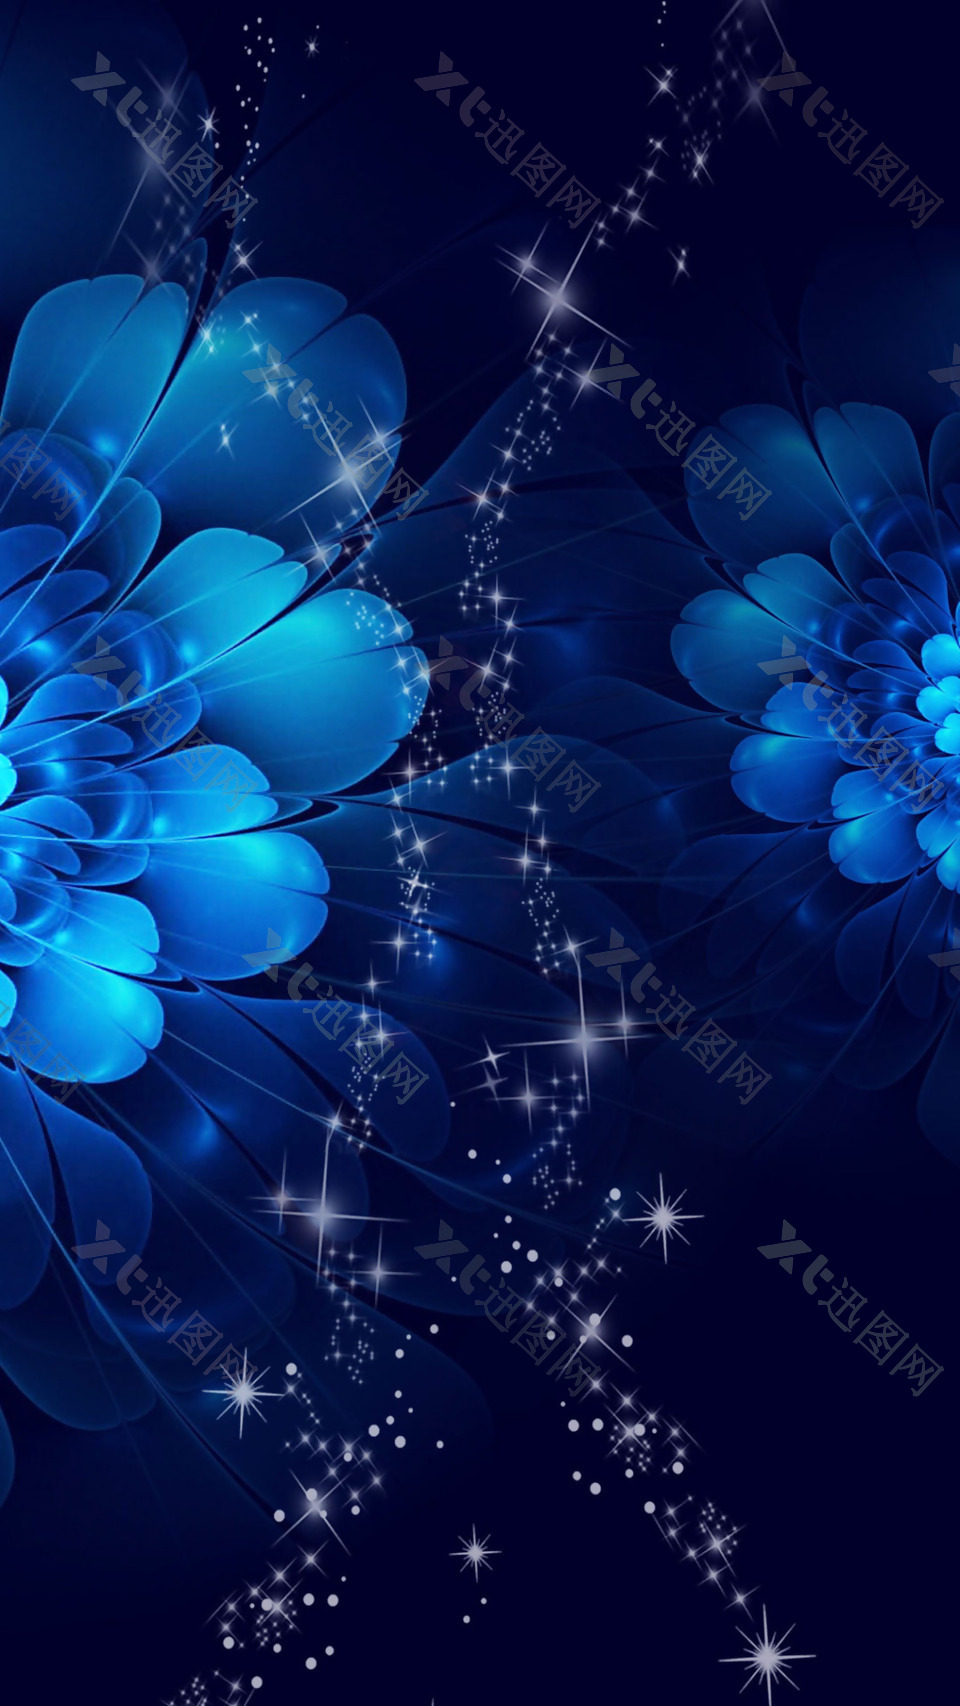 浪漫唯美蓝色花朵H5背景素材